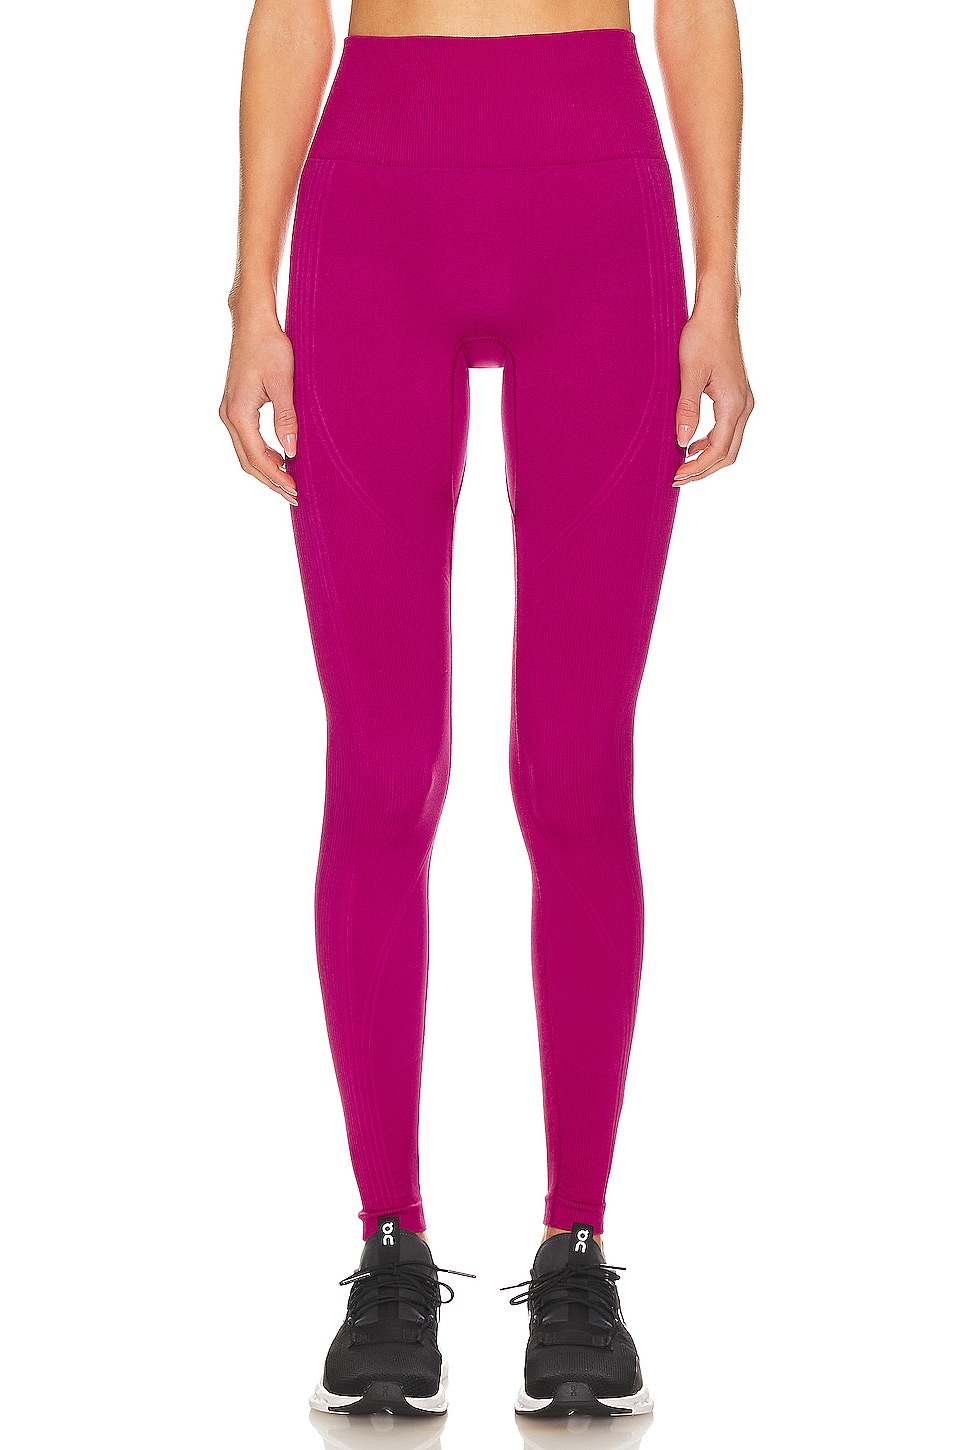 adidas by Stella McCartney True Strength Yoga 7/8 Tight in Semi Pink Glow